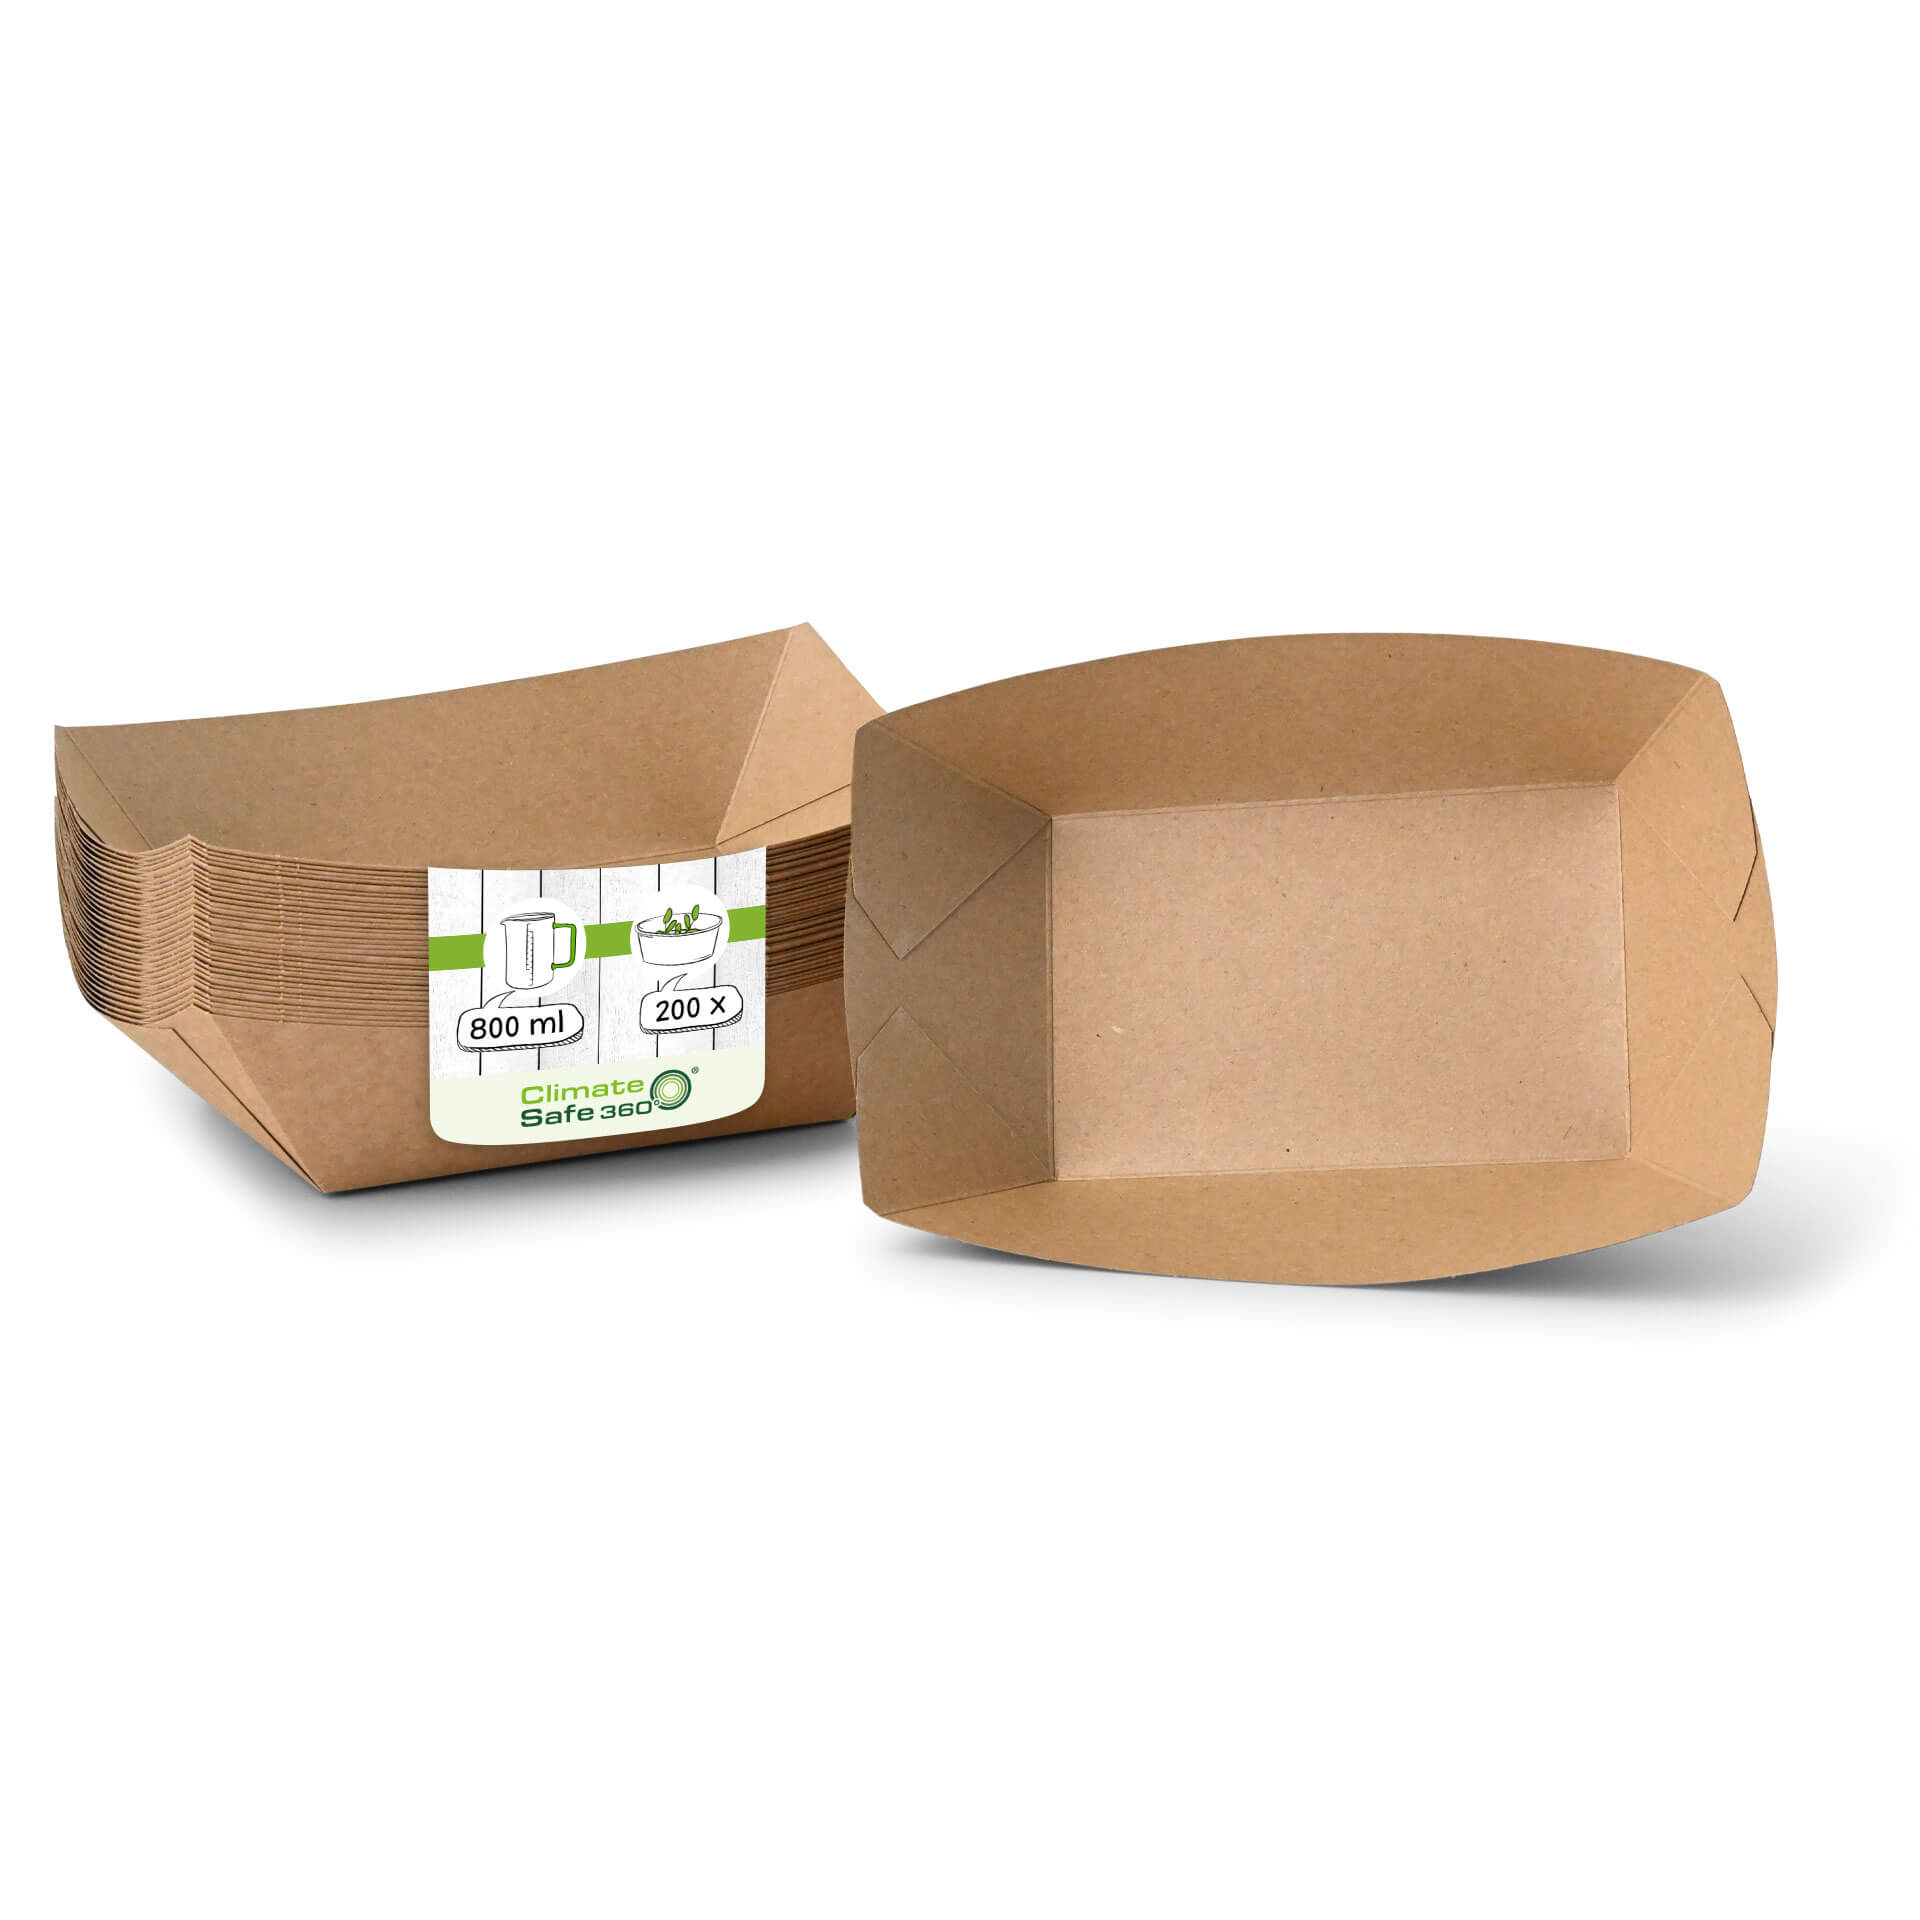 Snackschalen aus Karton (Premium) 800 ml, braun, bio-beschichtet